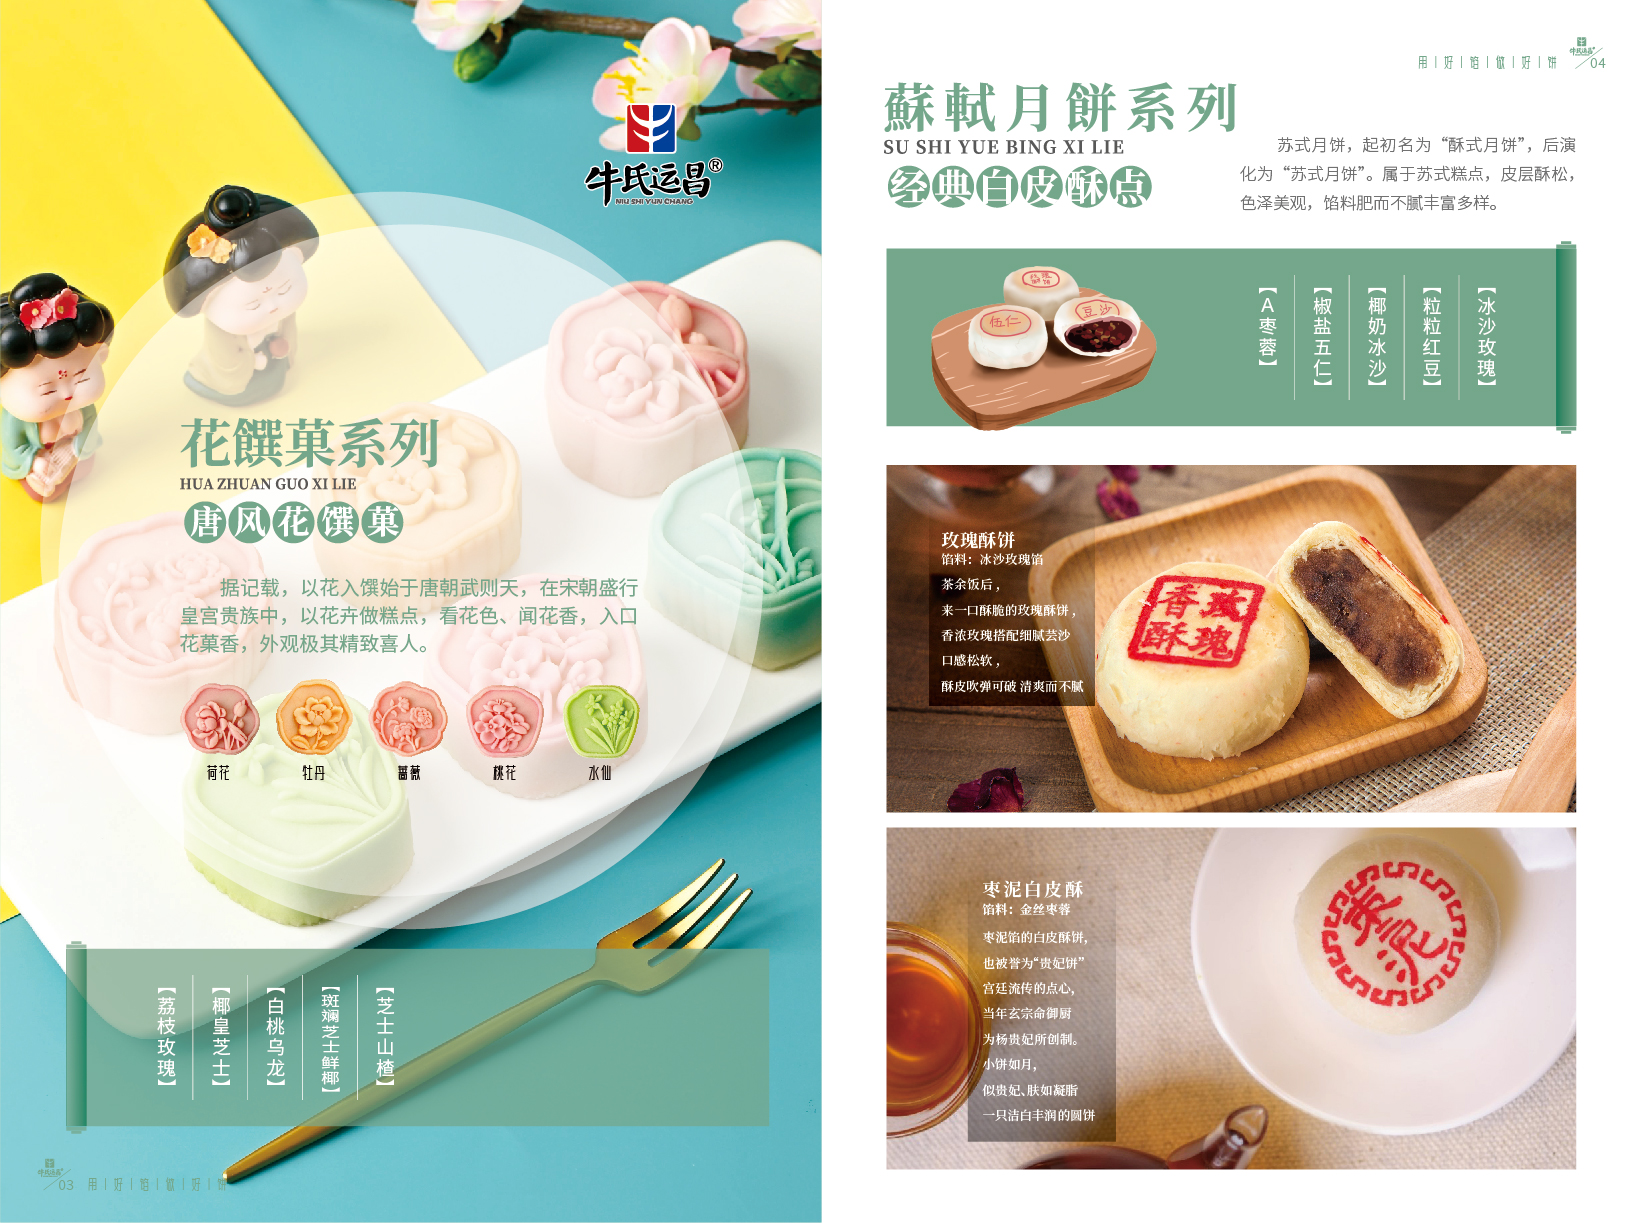 北京牛氏运昌（霸州）食品有限公司提供糕饼OEM代工 - FoodTalks食品供需平台